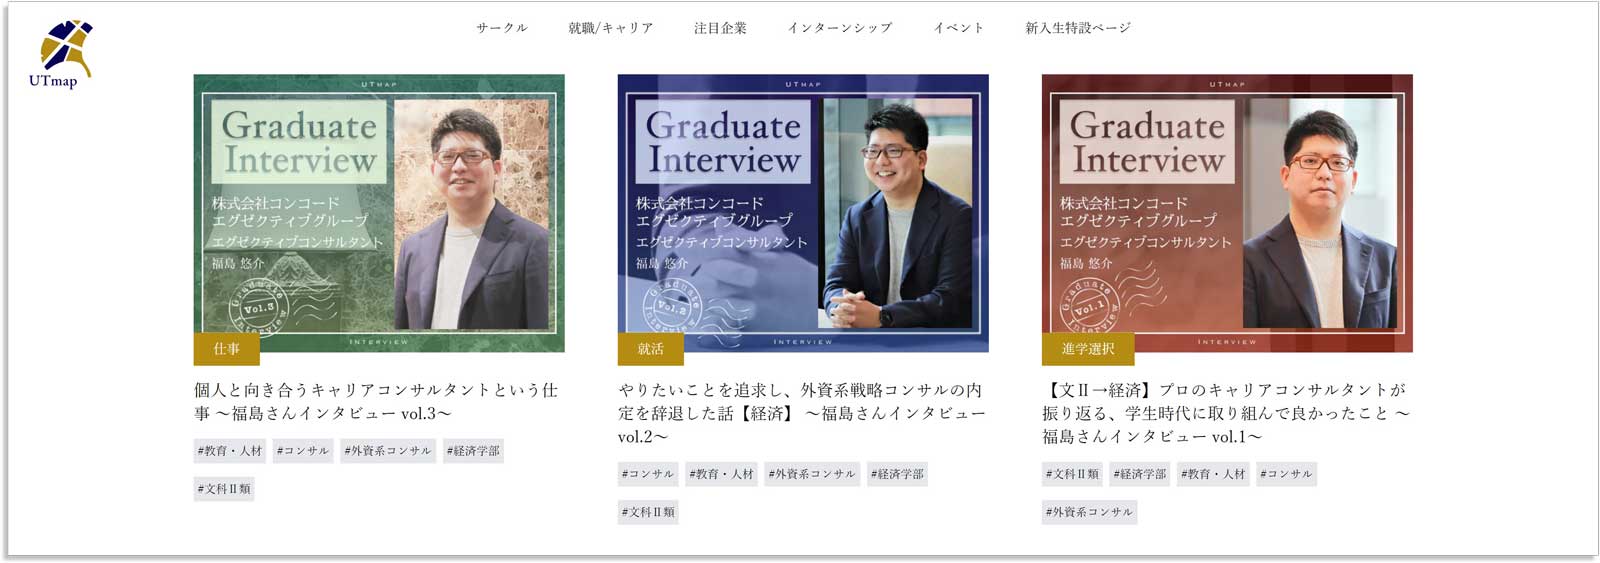 東大生のためのキャリア支援メディア「UTmap」に弊社福島のインタビュー記事が掲載されました